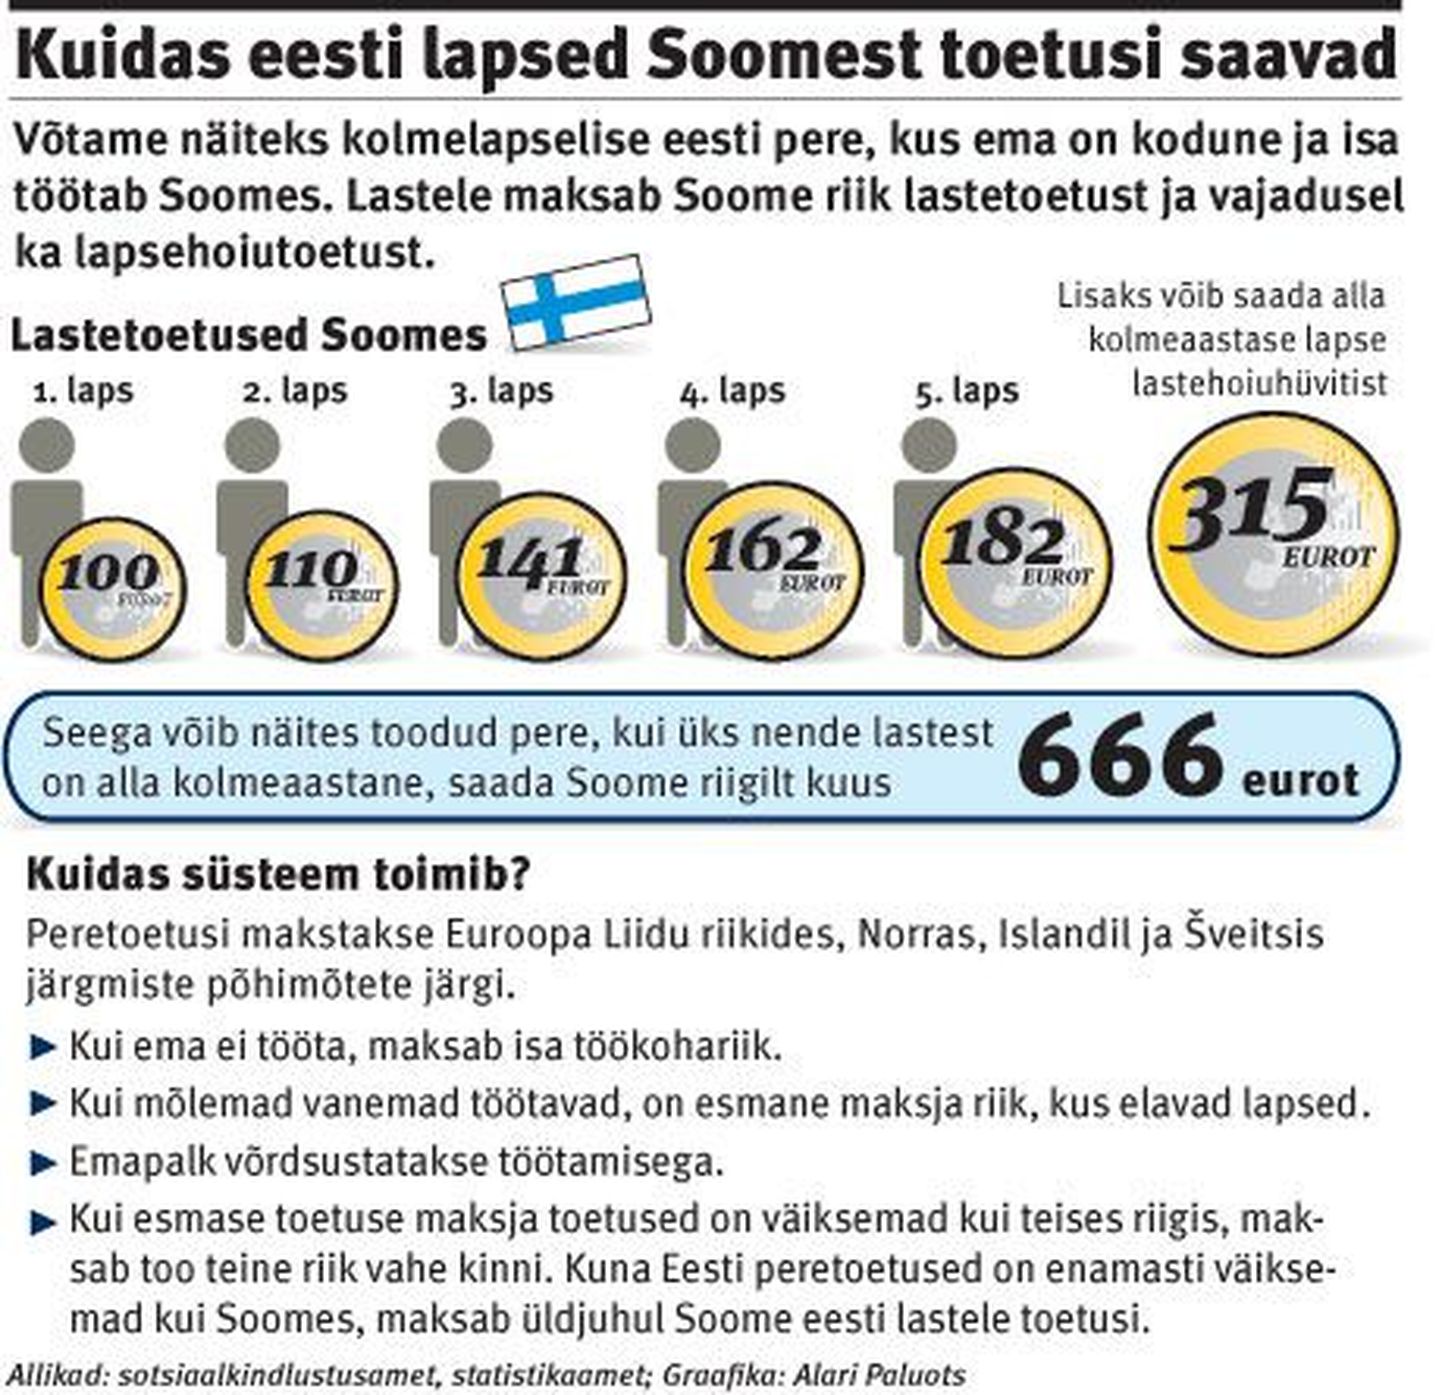 Kuidas eesti lapsed Soomest toetusi saavad.